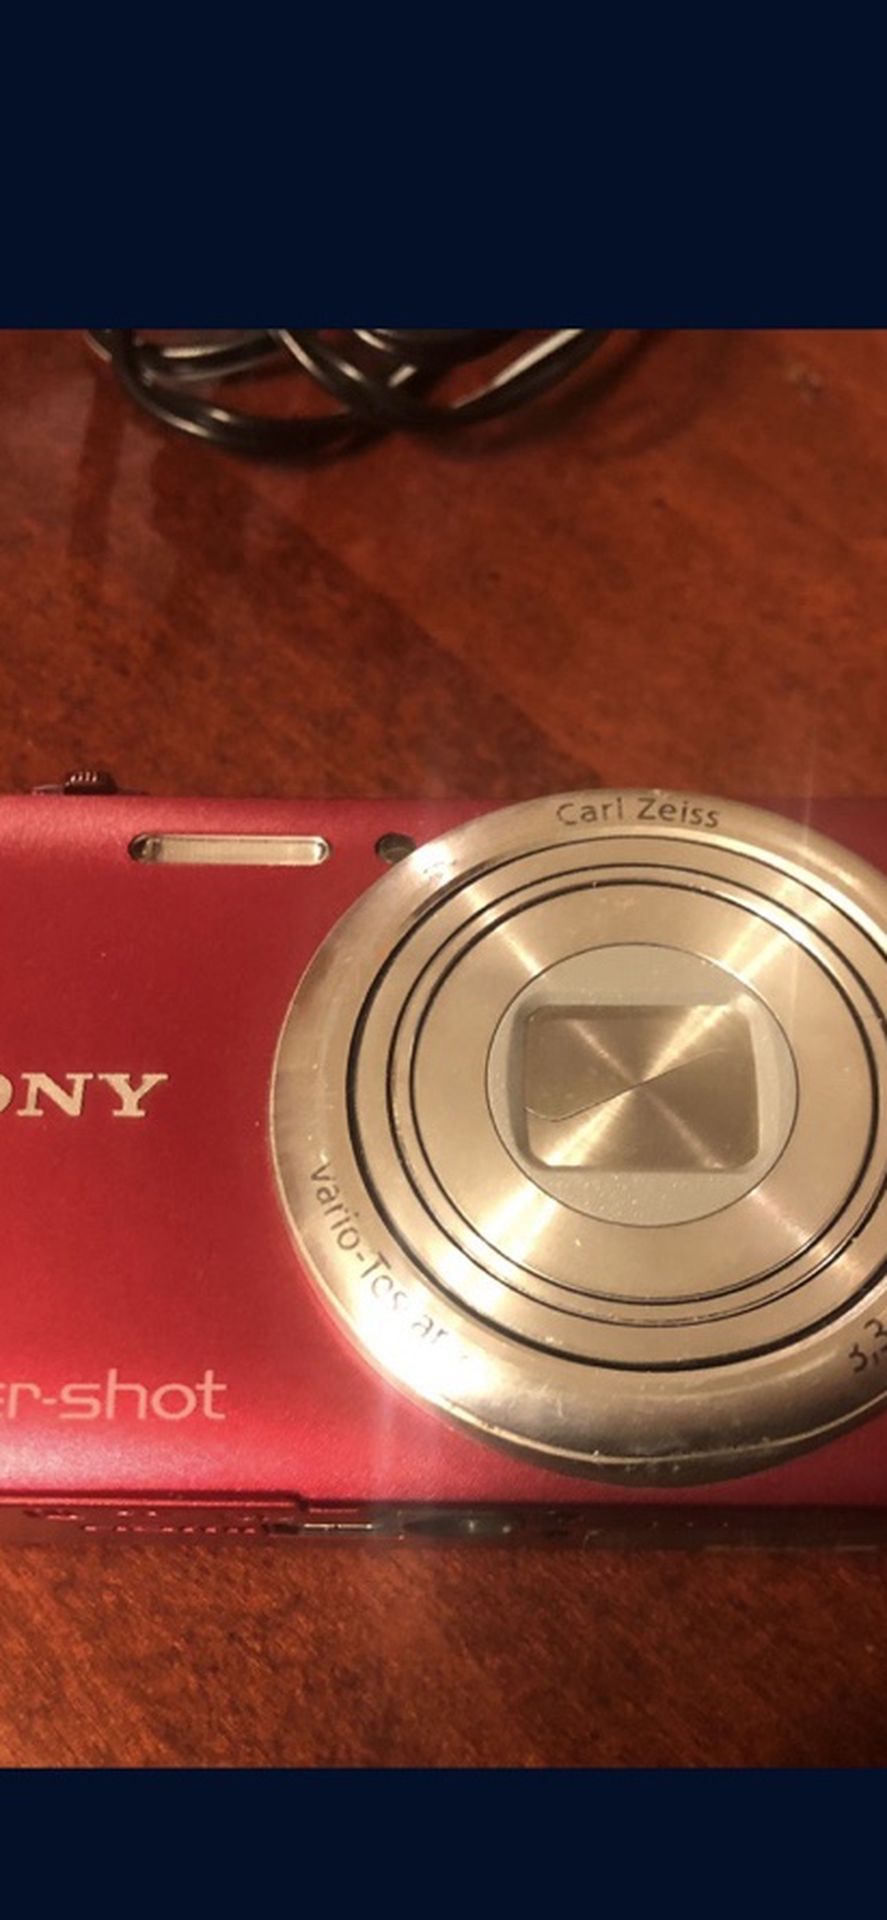 Sony dsc-wx80 cybershot camera